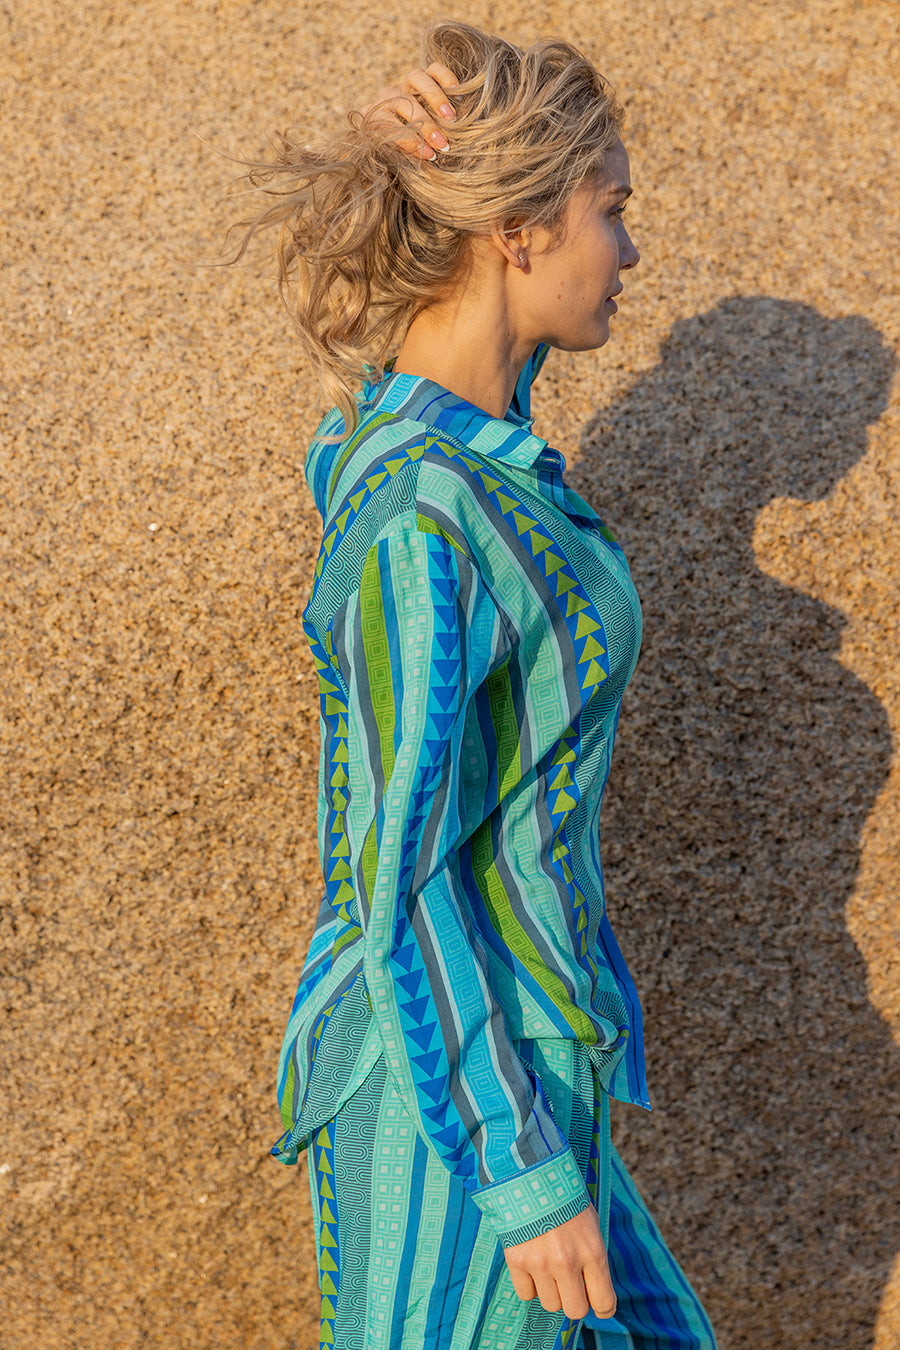 Γυναικείο πουκάμισο Kapena, Πράσινο/Γαλάζιο 4